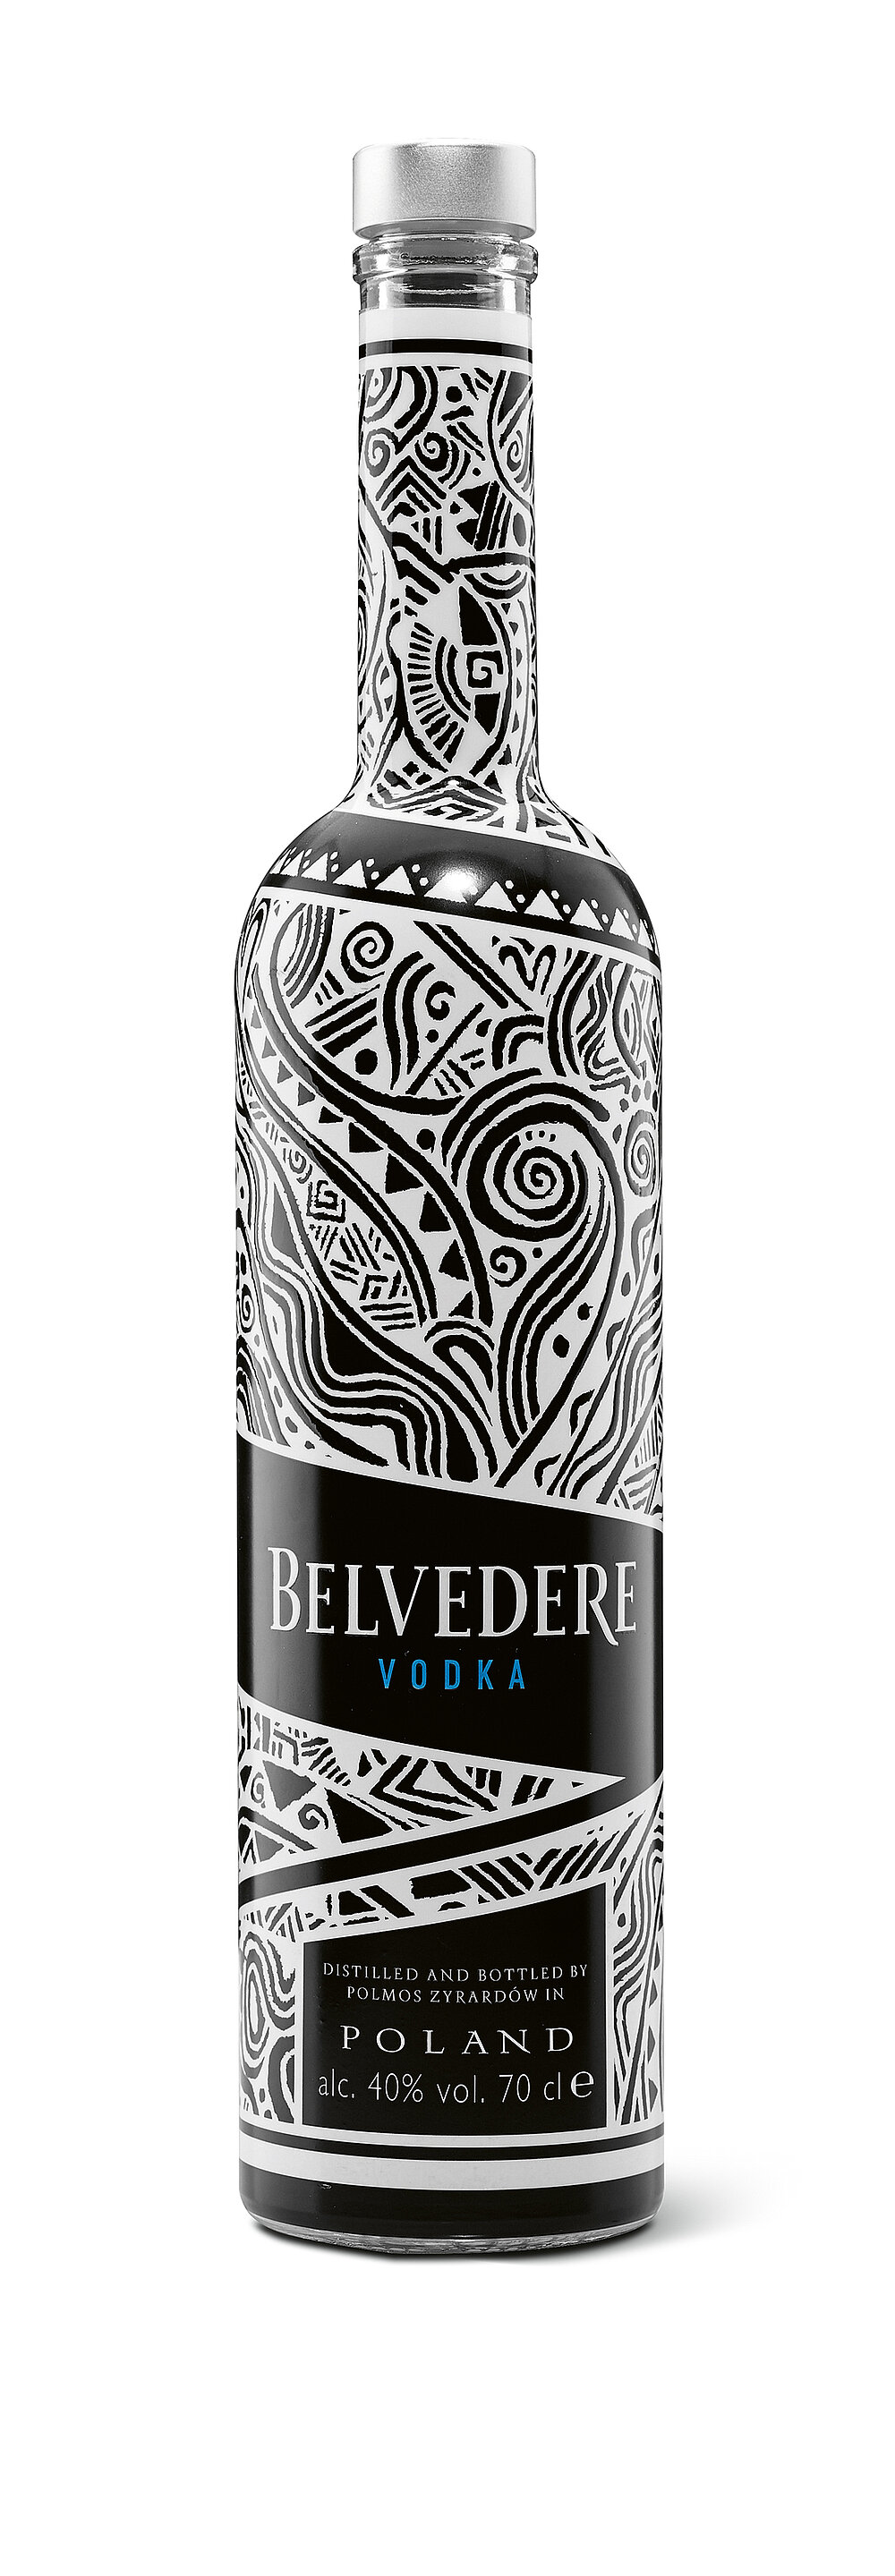 Artist Laolu Senbanjo Designs Limited Edition Bottle For Belvedere